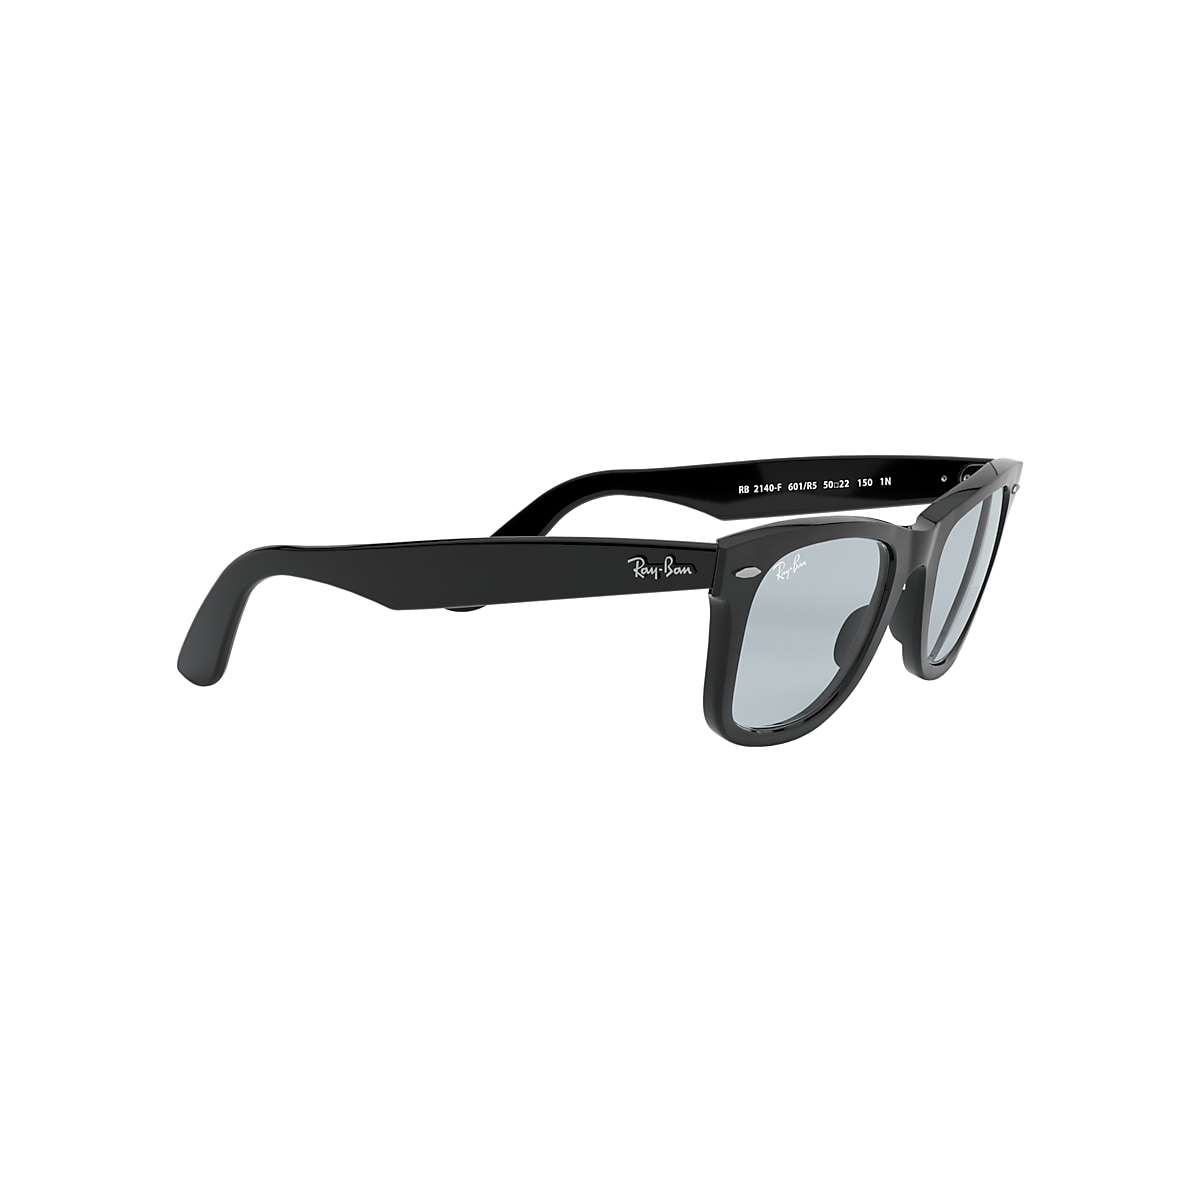 ORIGINAL WAYFARER WASHED LENSES Sunglasses in Black and Light Grey